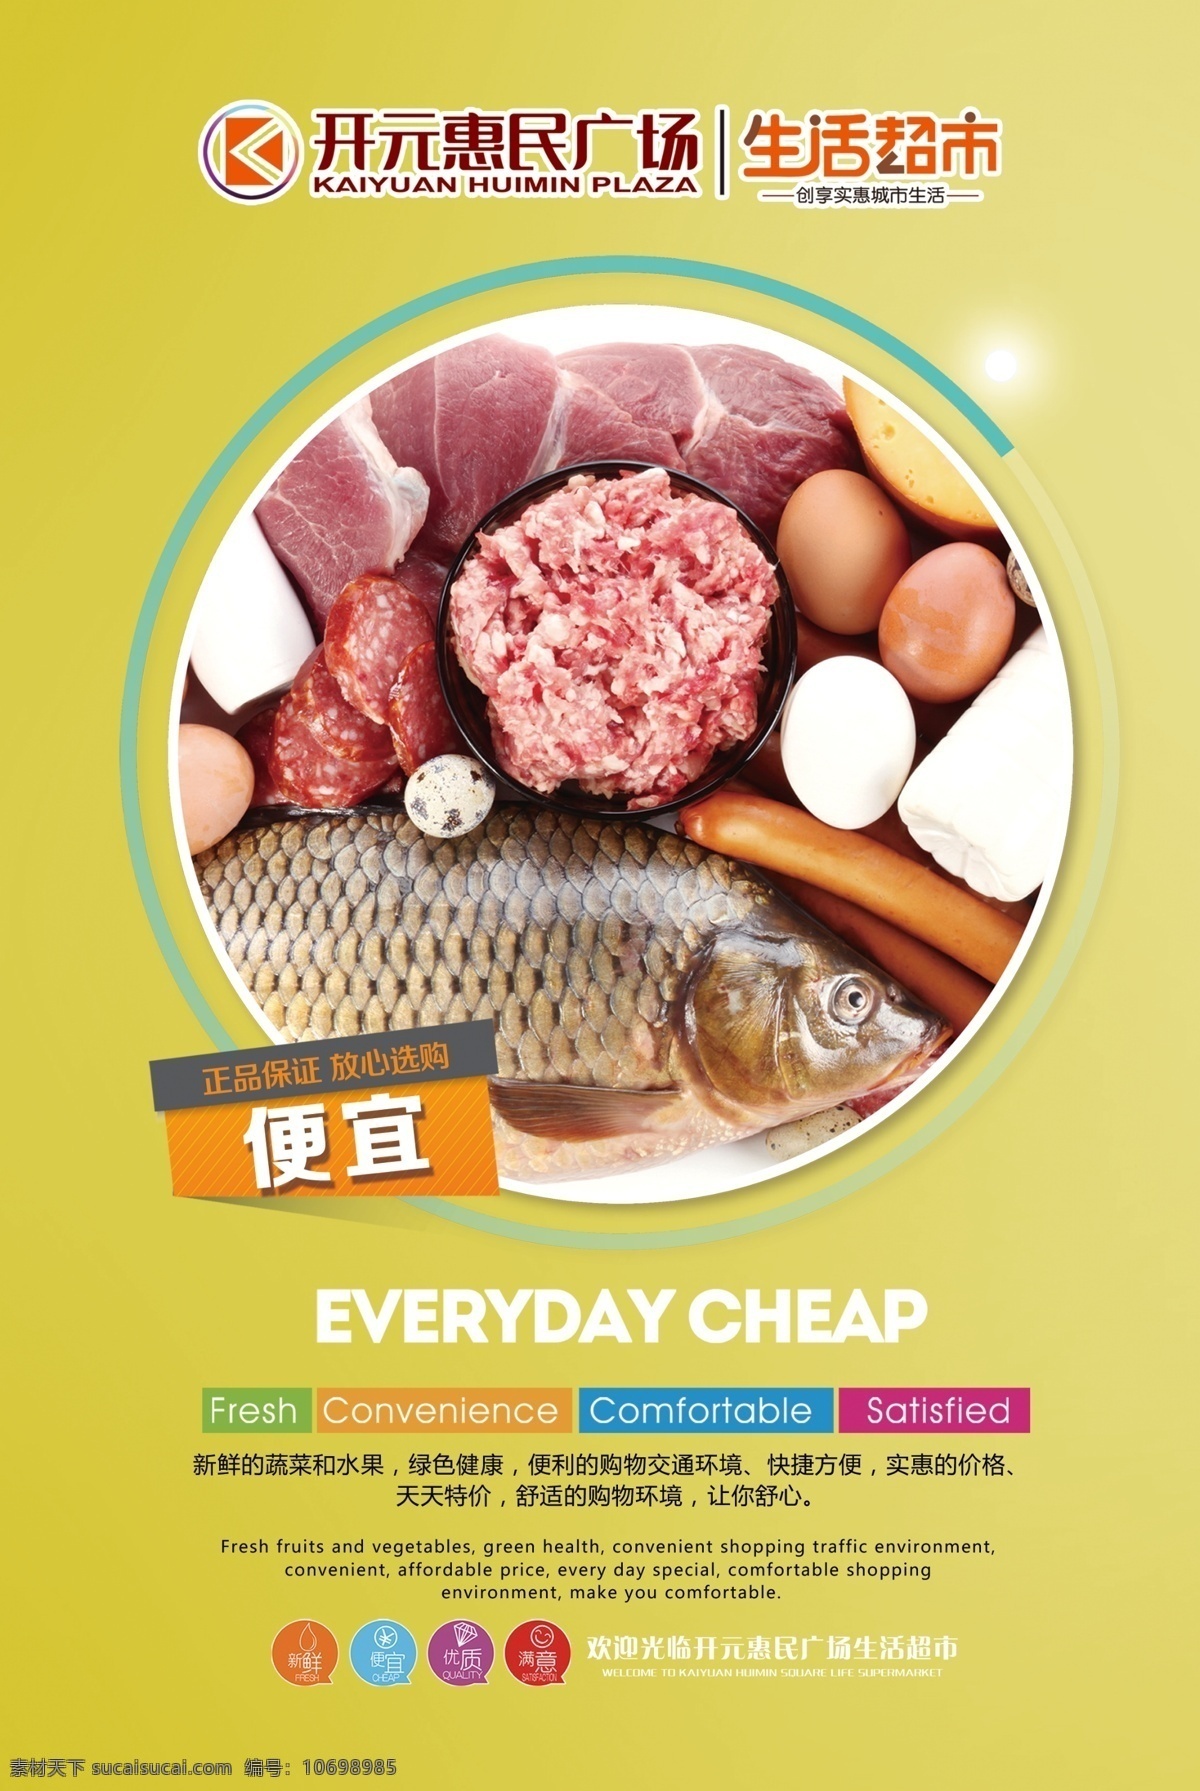 超市宣传海报 超市促销活动 商品实惠便宜 新鲜便宜放心 天天特价